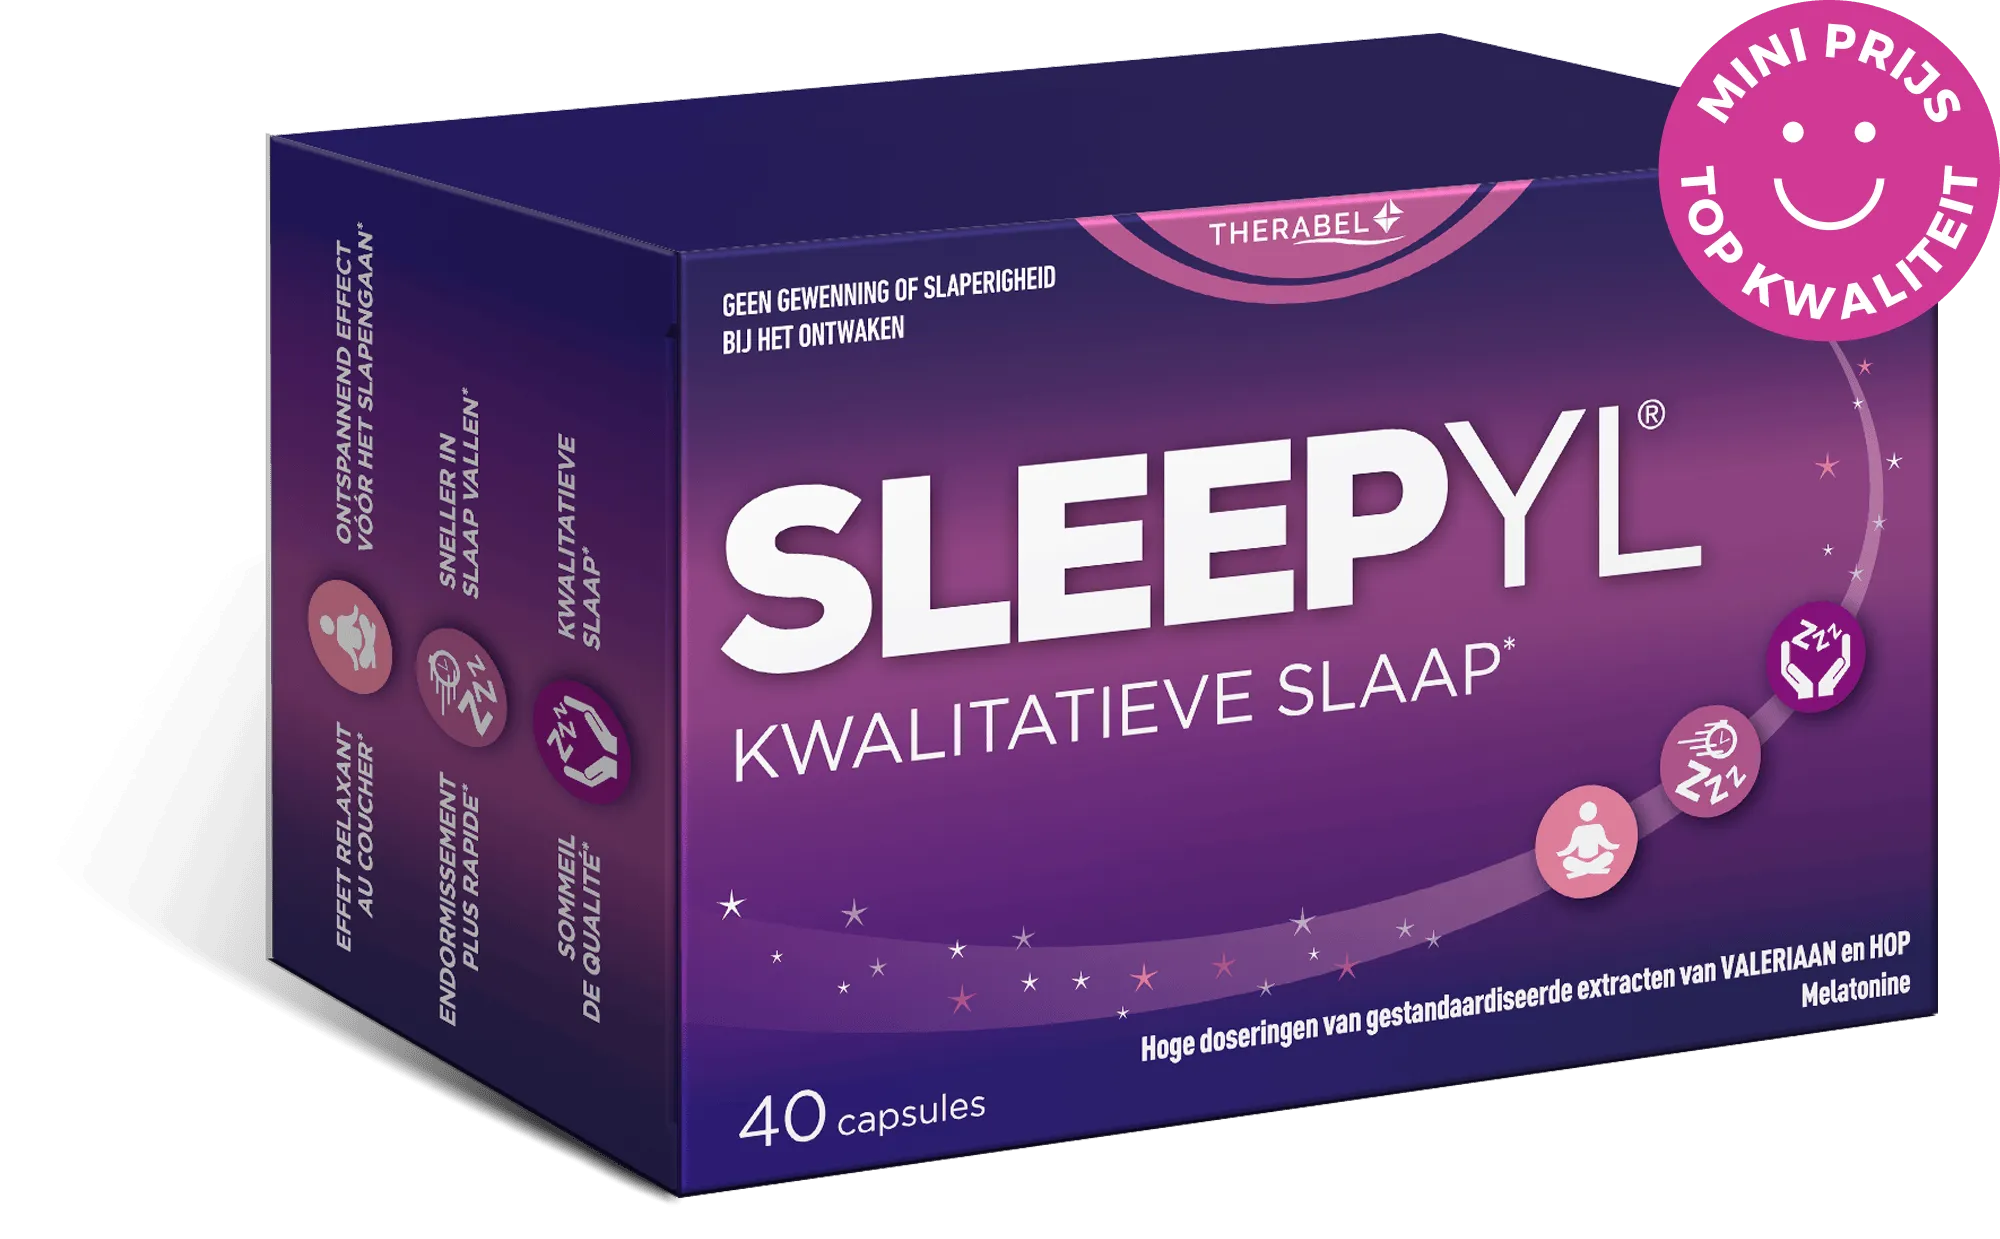 SLEEPYL®
Slaapwel dankzij de 3-voudige werking
